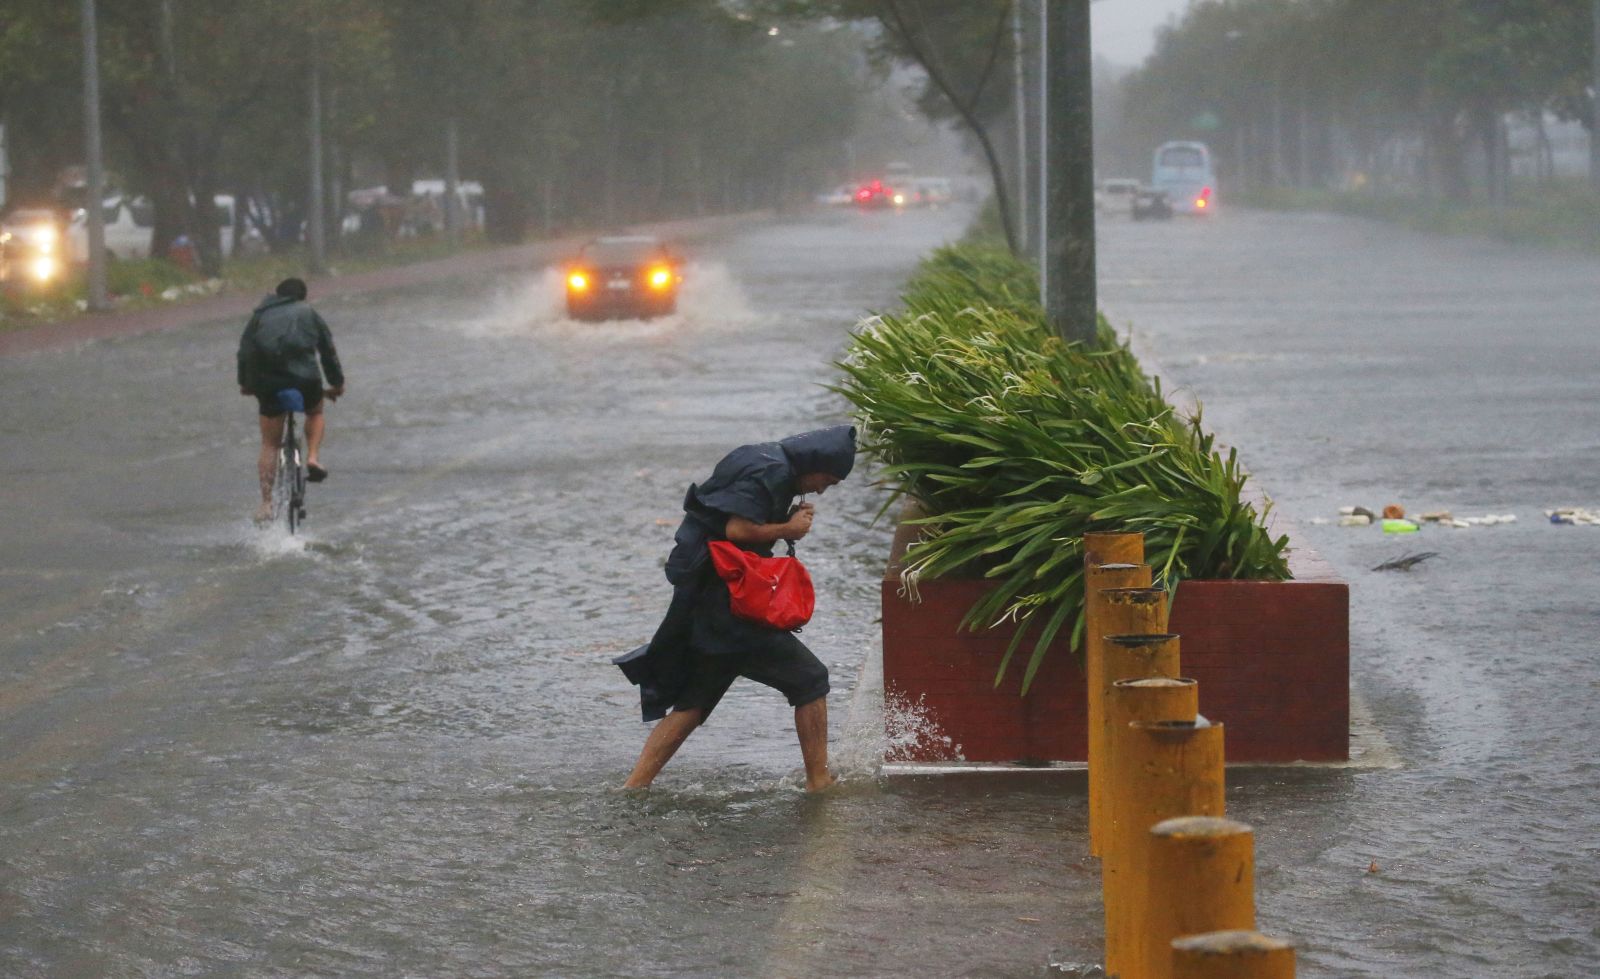 Siêu bão Mangkhut quét qua đường phố Philippines